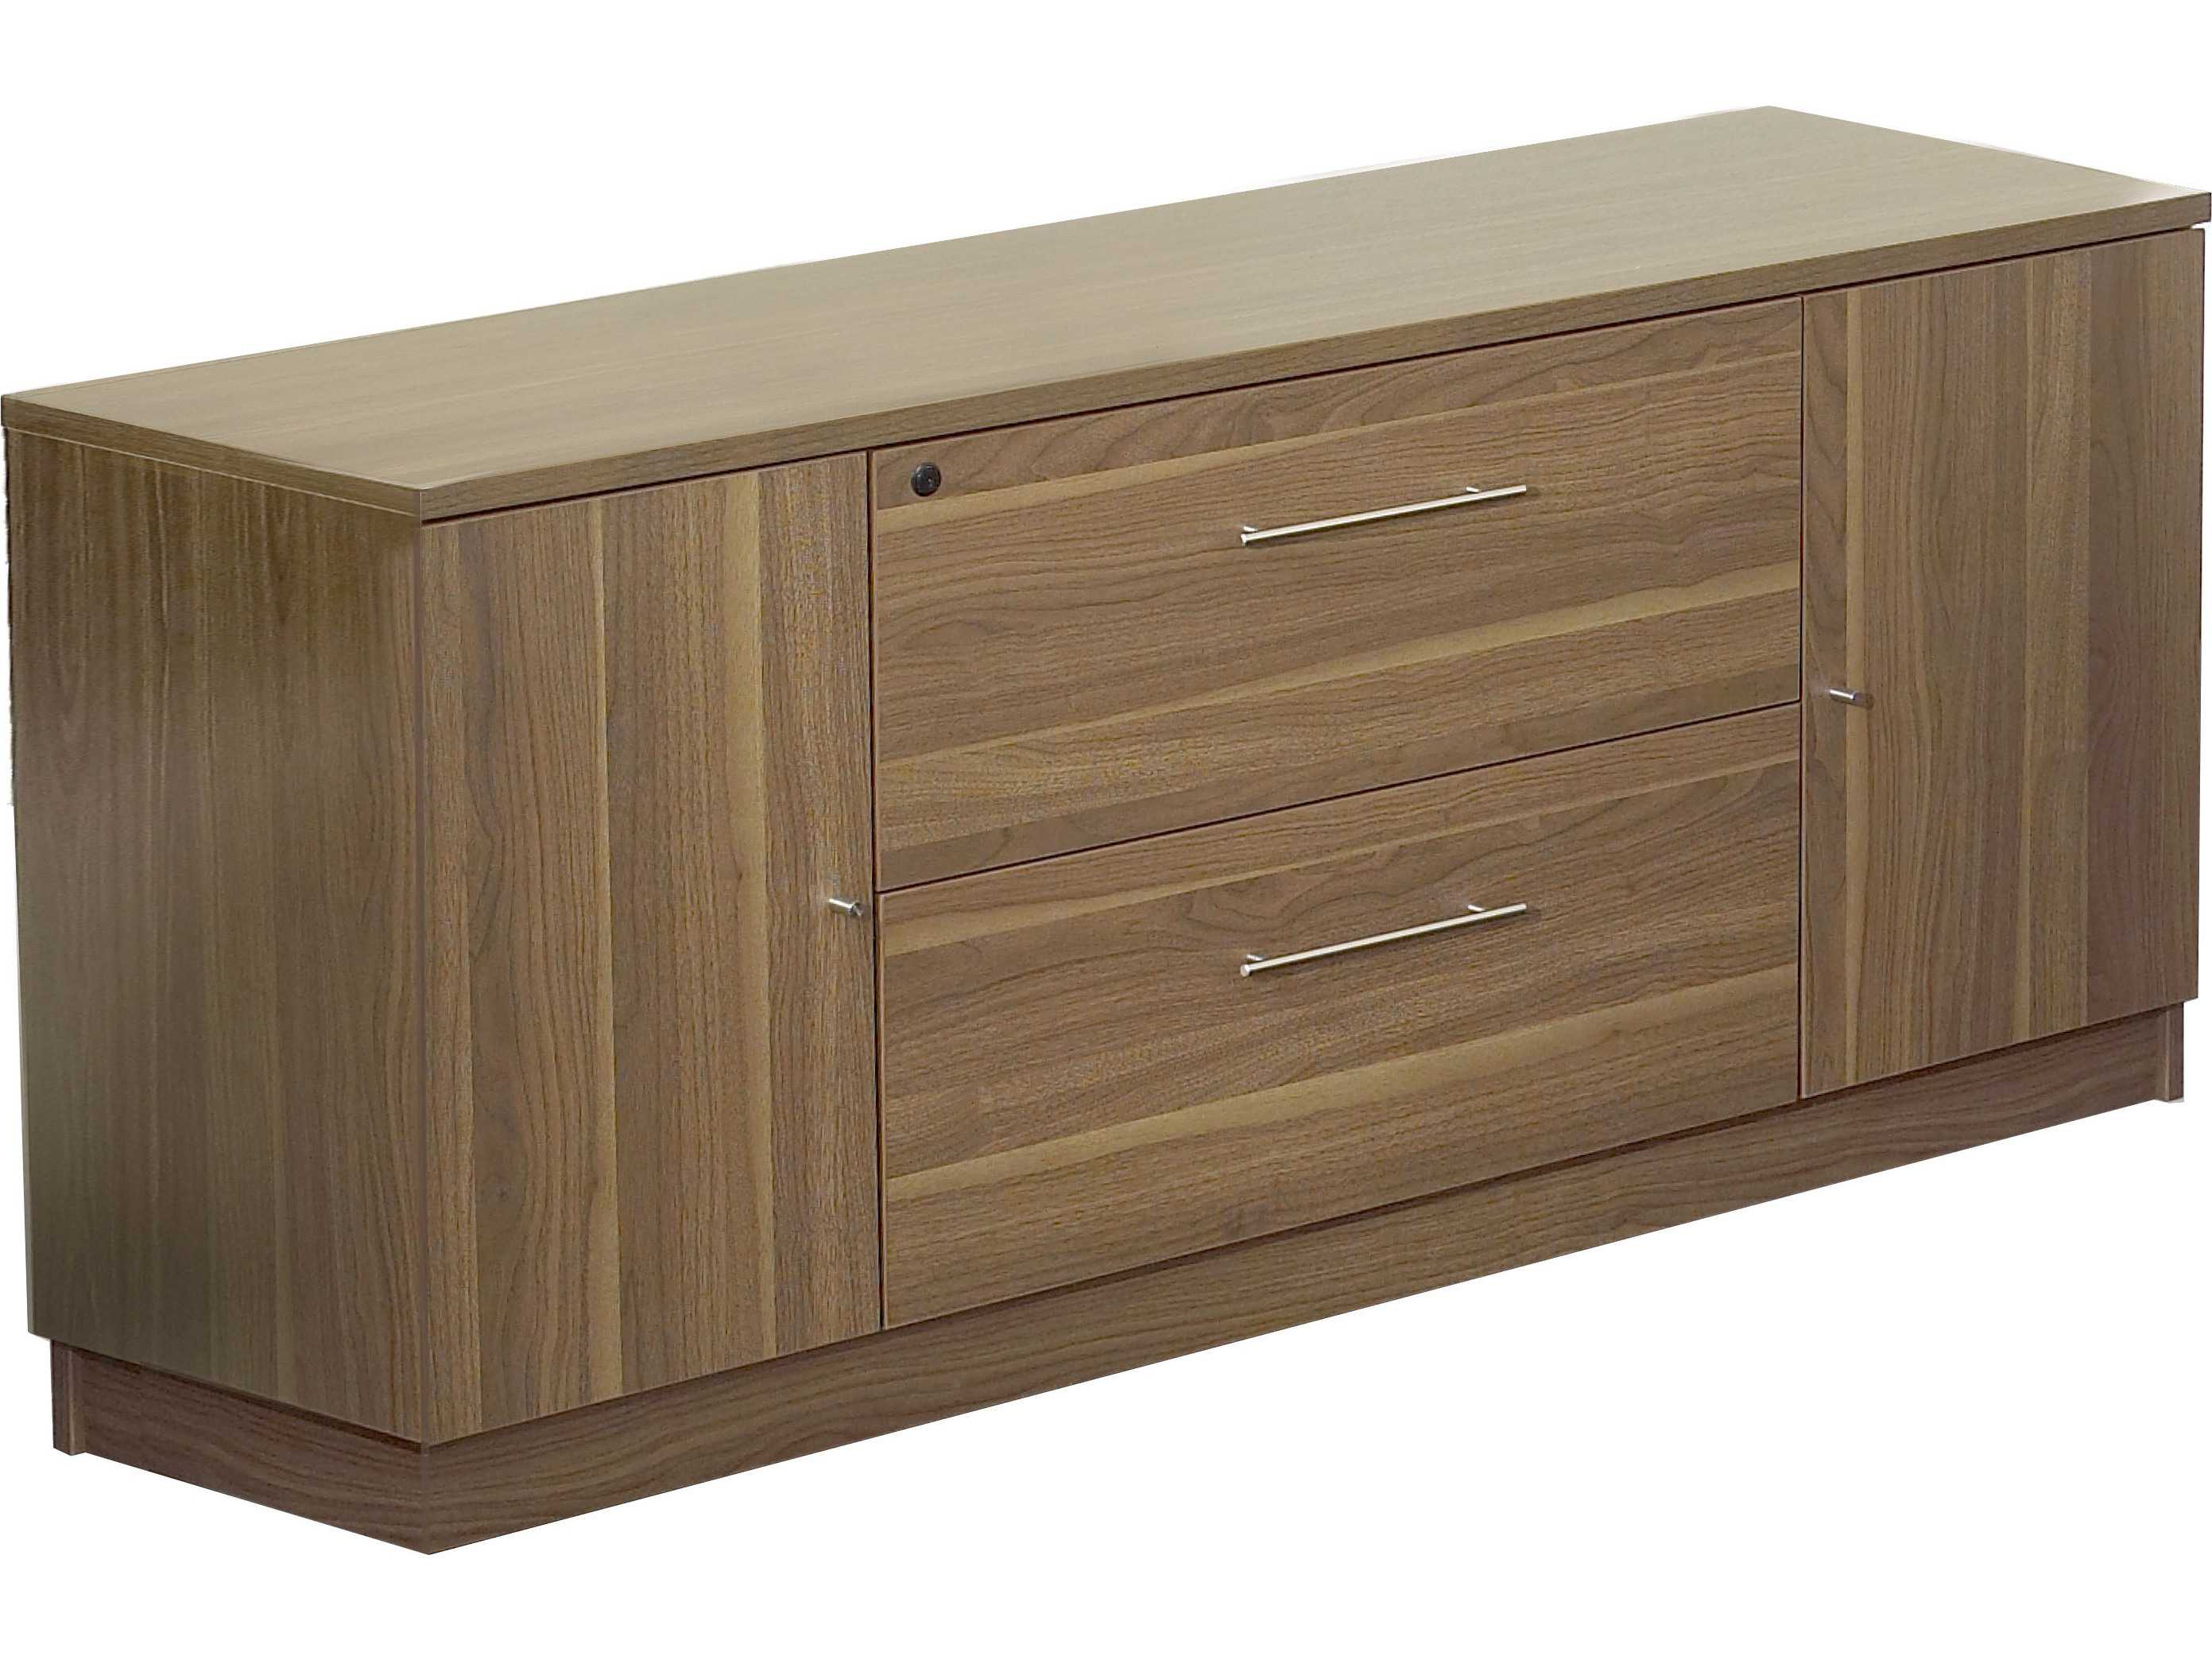 Unique Furniture 100 Series Walnut Credenza File Cabinet File within dimensions 2783 X 2088